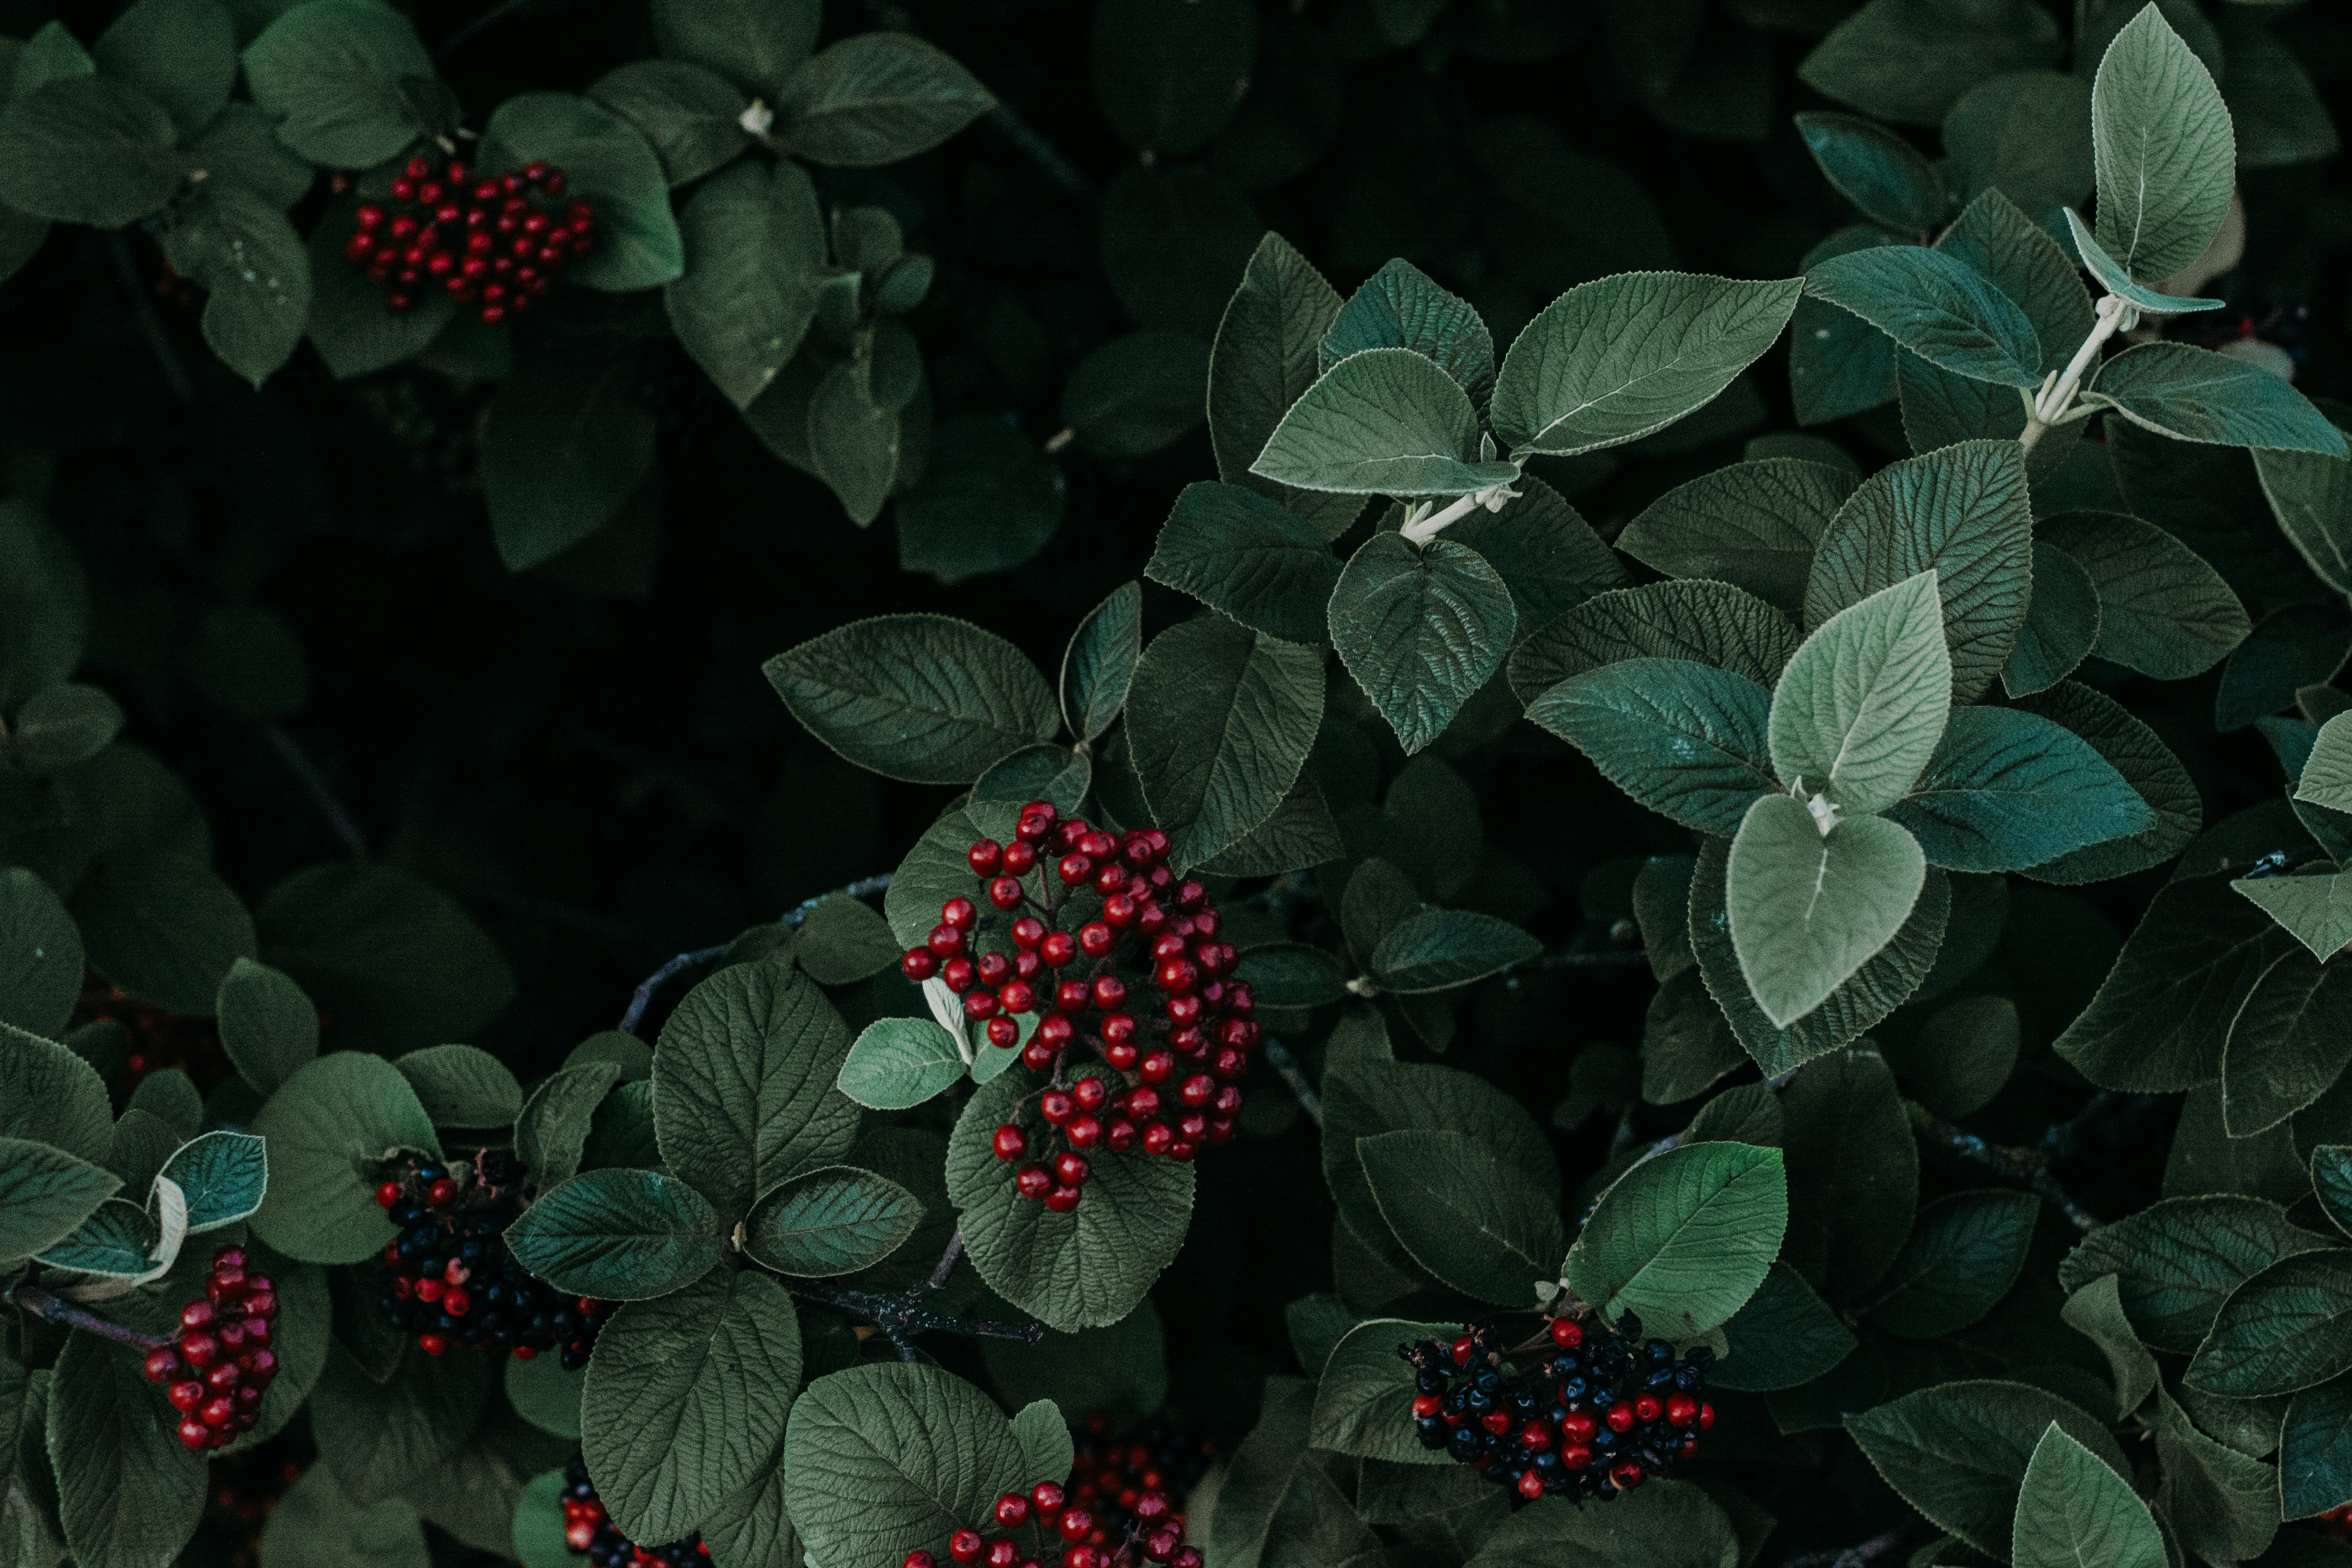 Red Berries: Tận hưởng hương vị tuyệt vời và tươi ngon của quả mọng đỏ rực này với những hình ảnh đầy màu sắc và tươi mới. Ngắm nhìn những hạt cầu kỳ của quả mọng và cảm nhận vị ngọt mát trên đầu lưỡi. Đảm bảo sẽ khiến bạn thèm muốn hơn khi nhìn vào chúng.